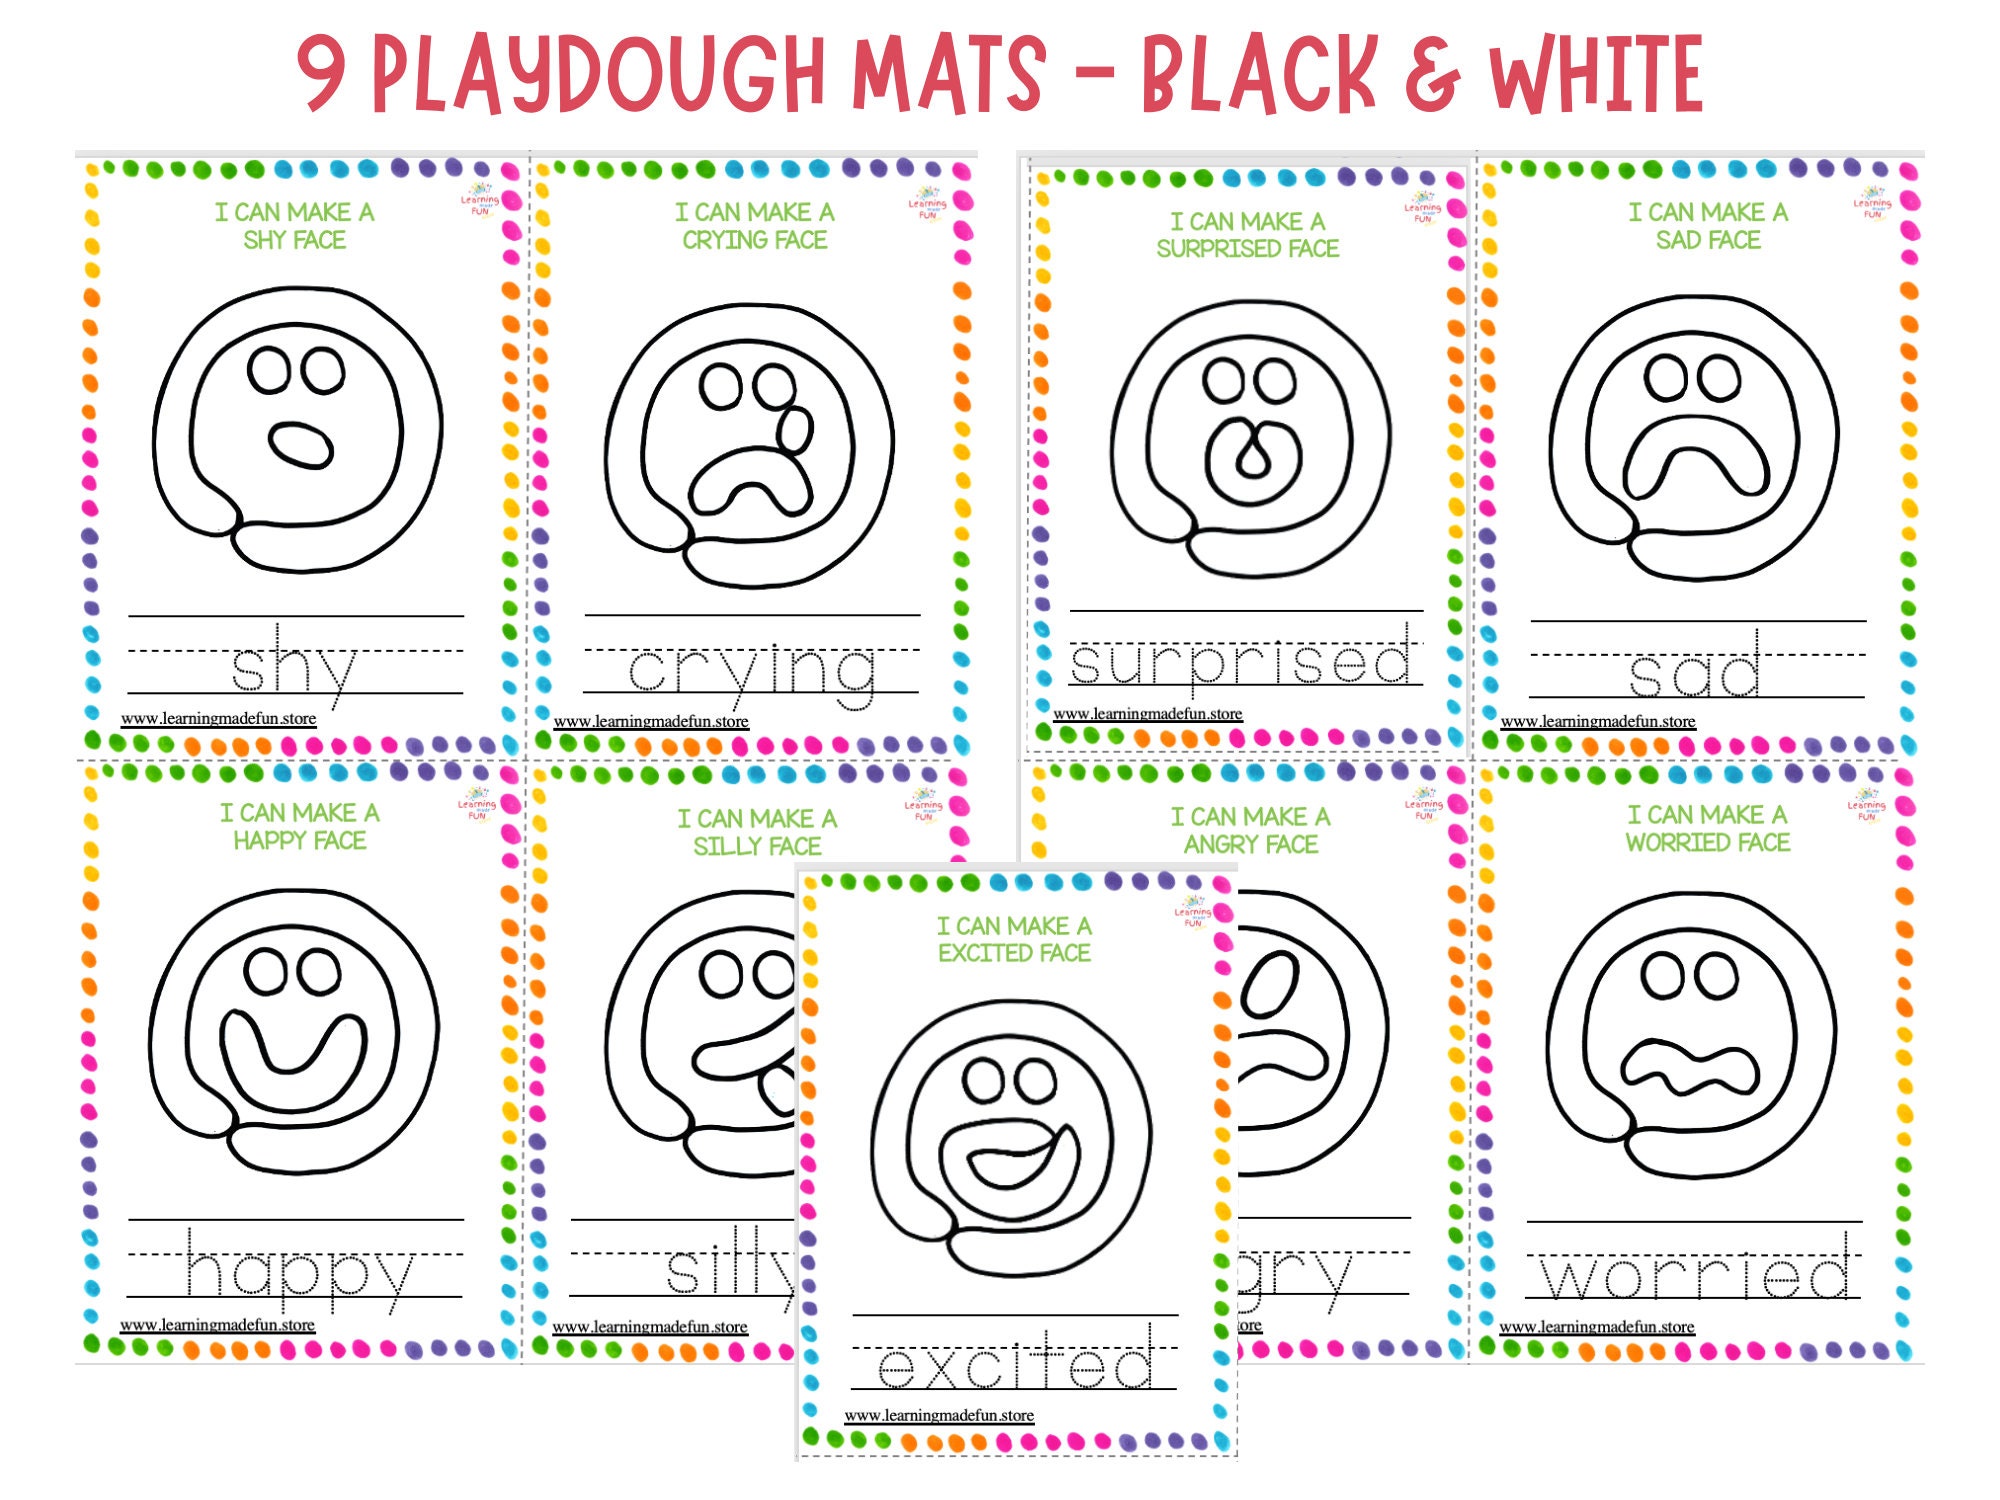 Feelings Play Dough Mats, Emotions Cards, Play Doh Mat Visual